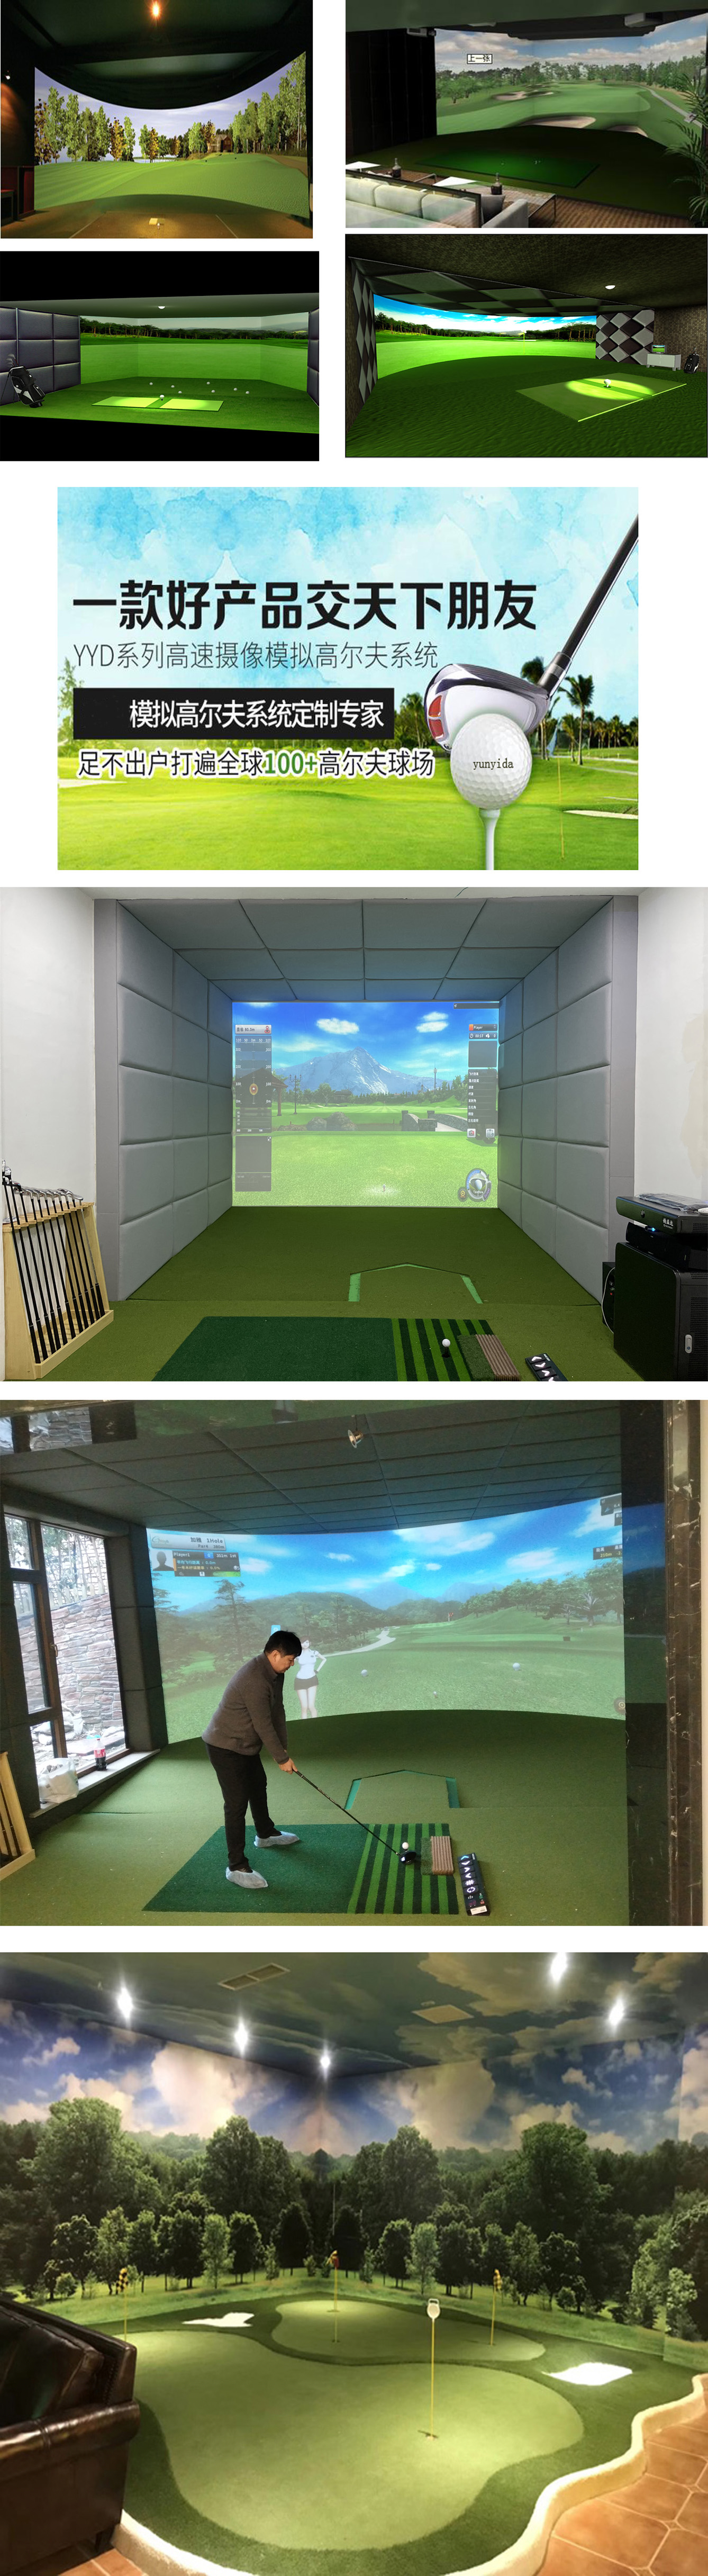 室内高尔夫系统  32.jpg